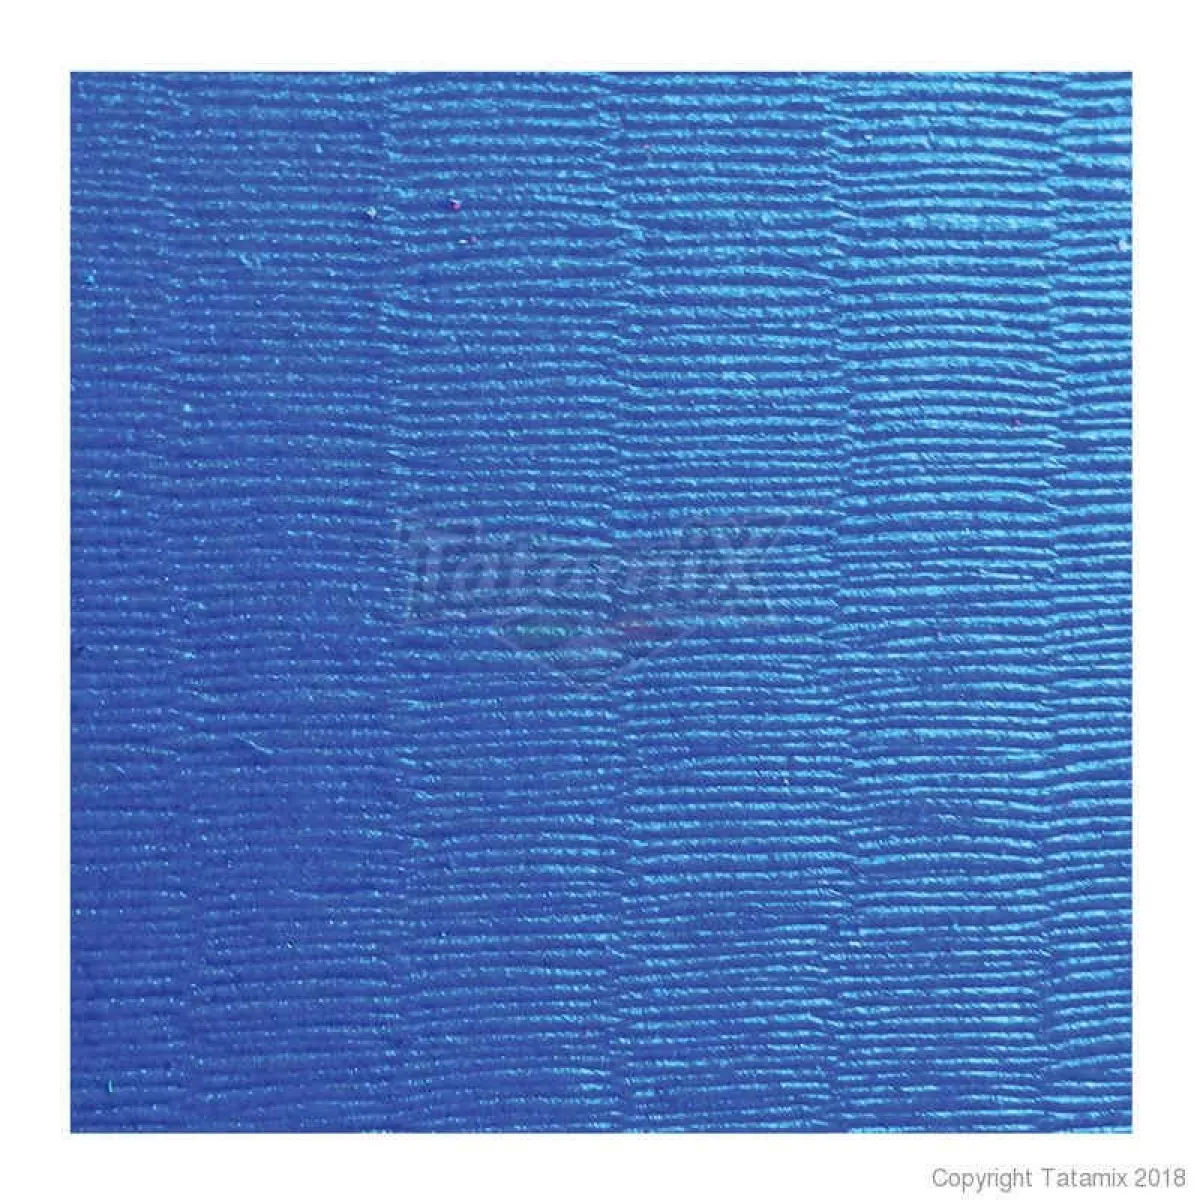 Martial arts mats J40D blue/grey/yellow 100 cm x 100 cm x 4 cm